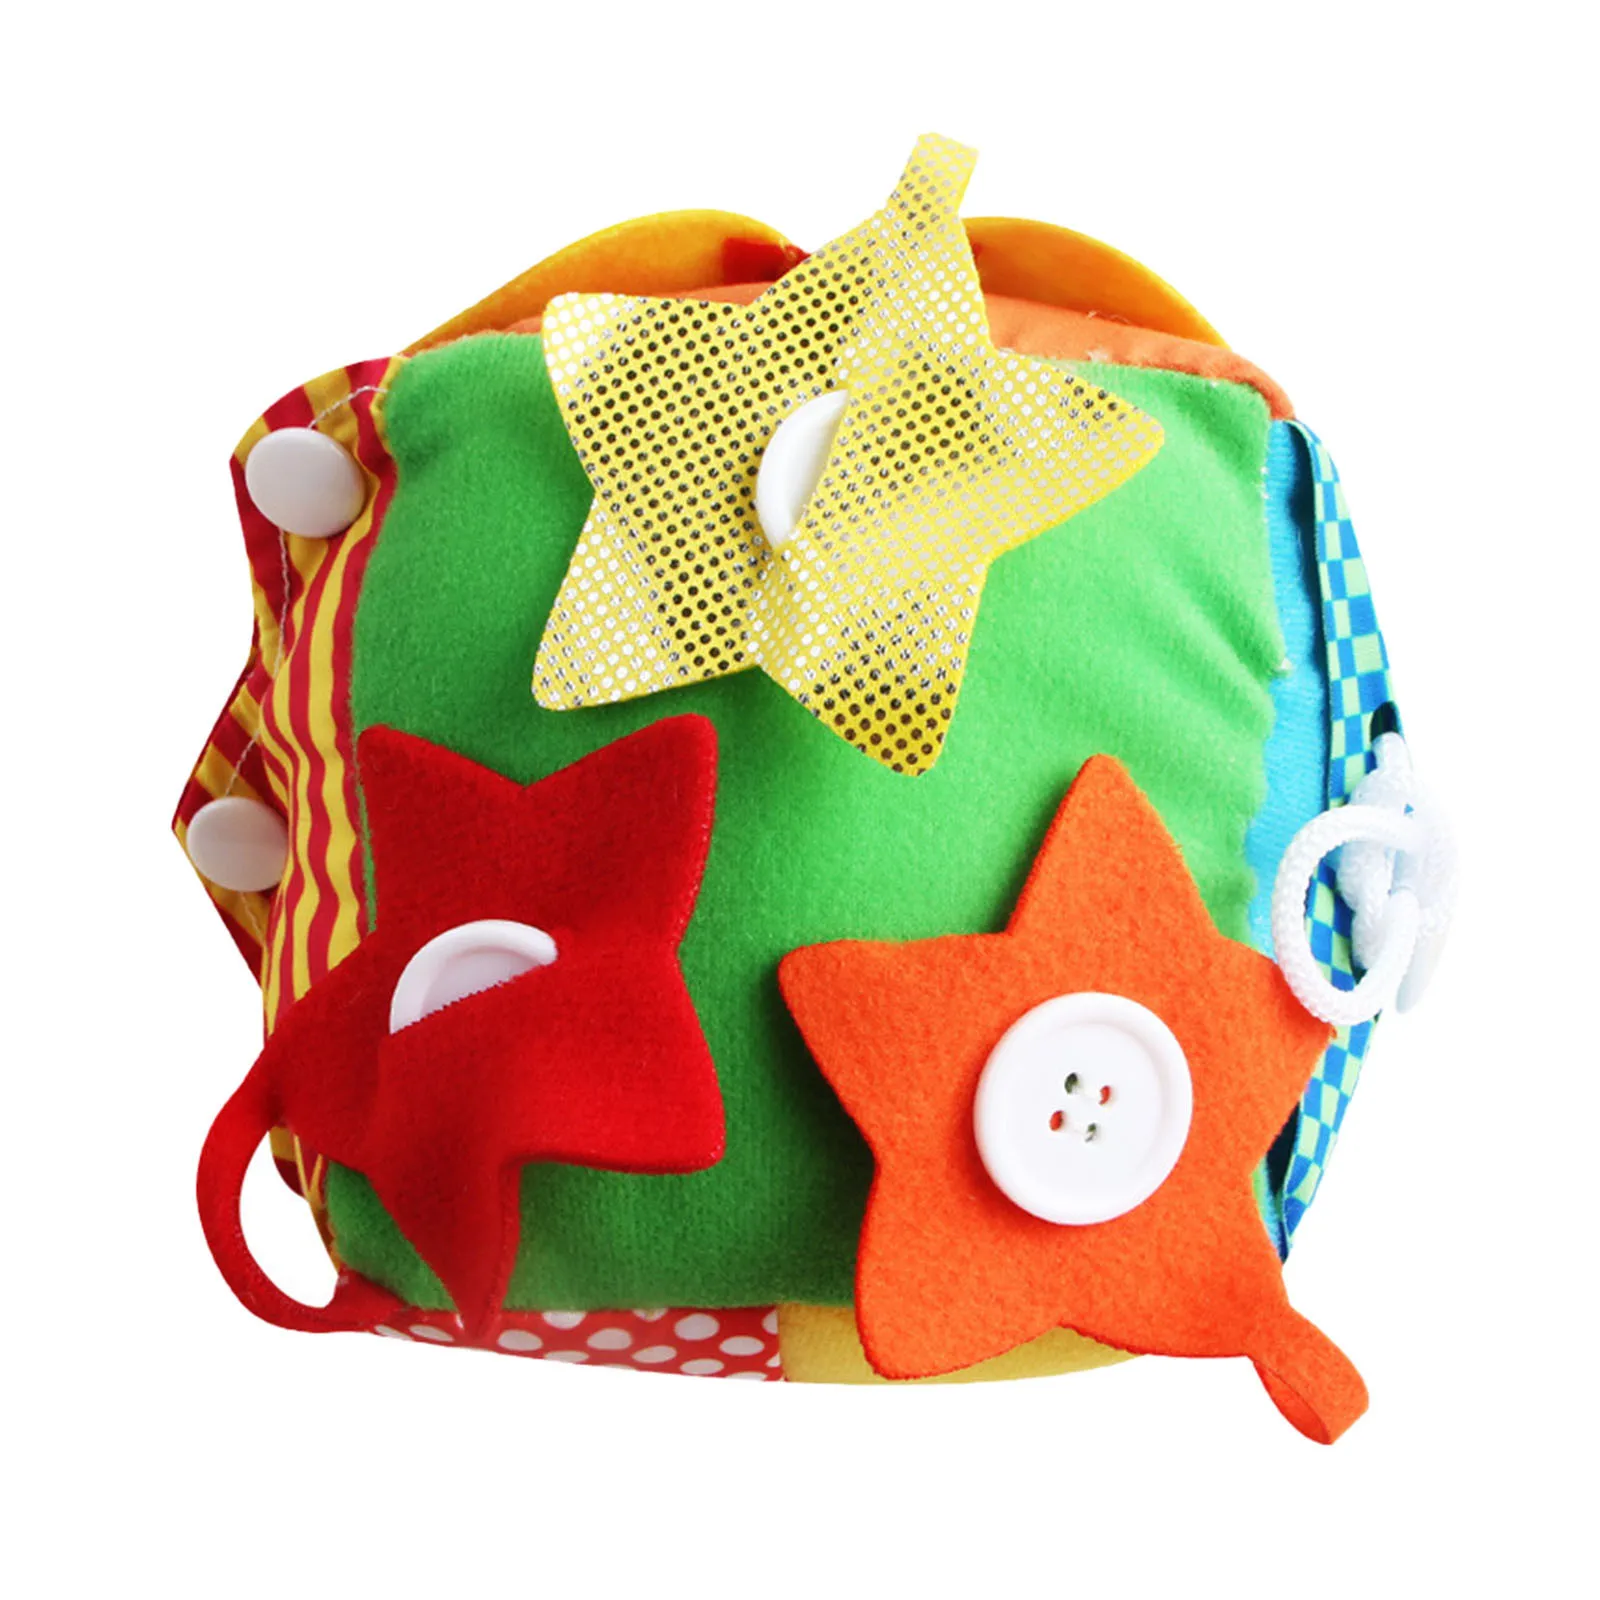 

Игрушка Монтессори «Мой первый ребенок», мягкая набивная тканевая книга с высокой контрастностью, сенсорная развивающая игрушка для малышей от 0 до 12 месяцев